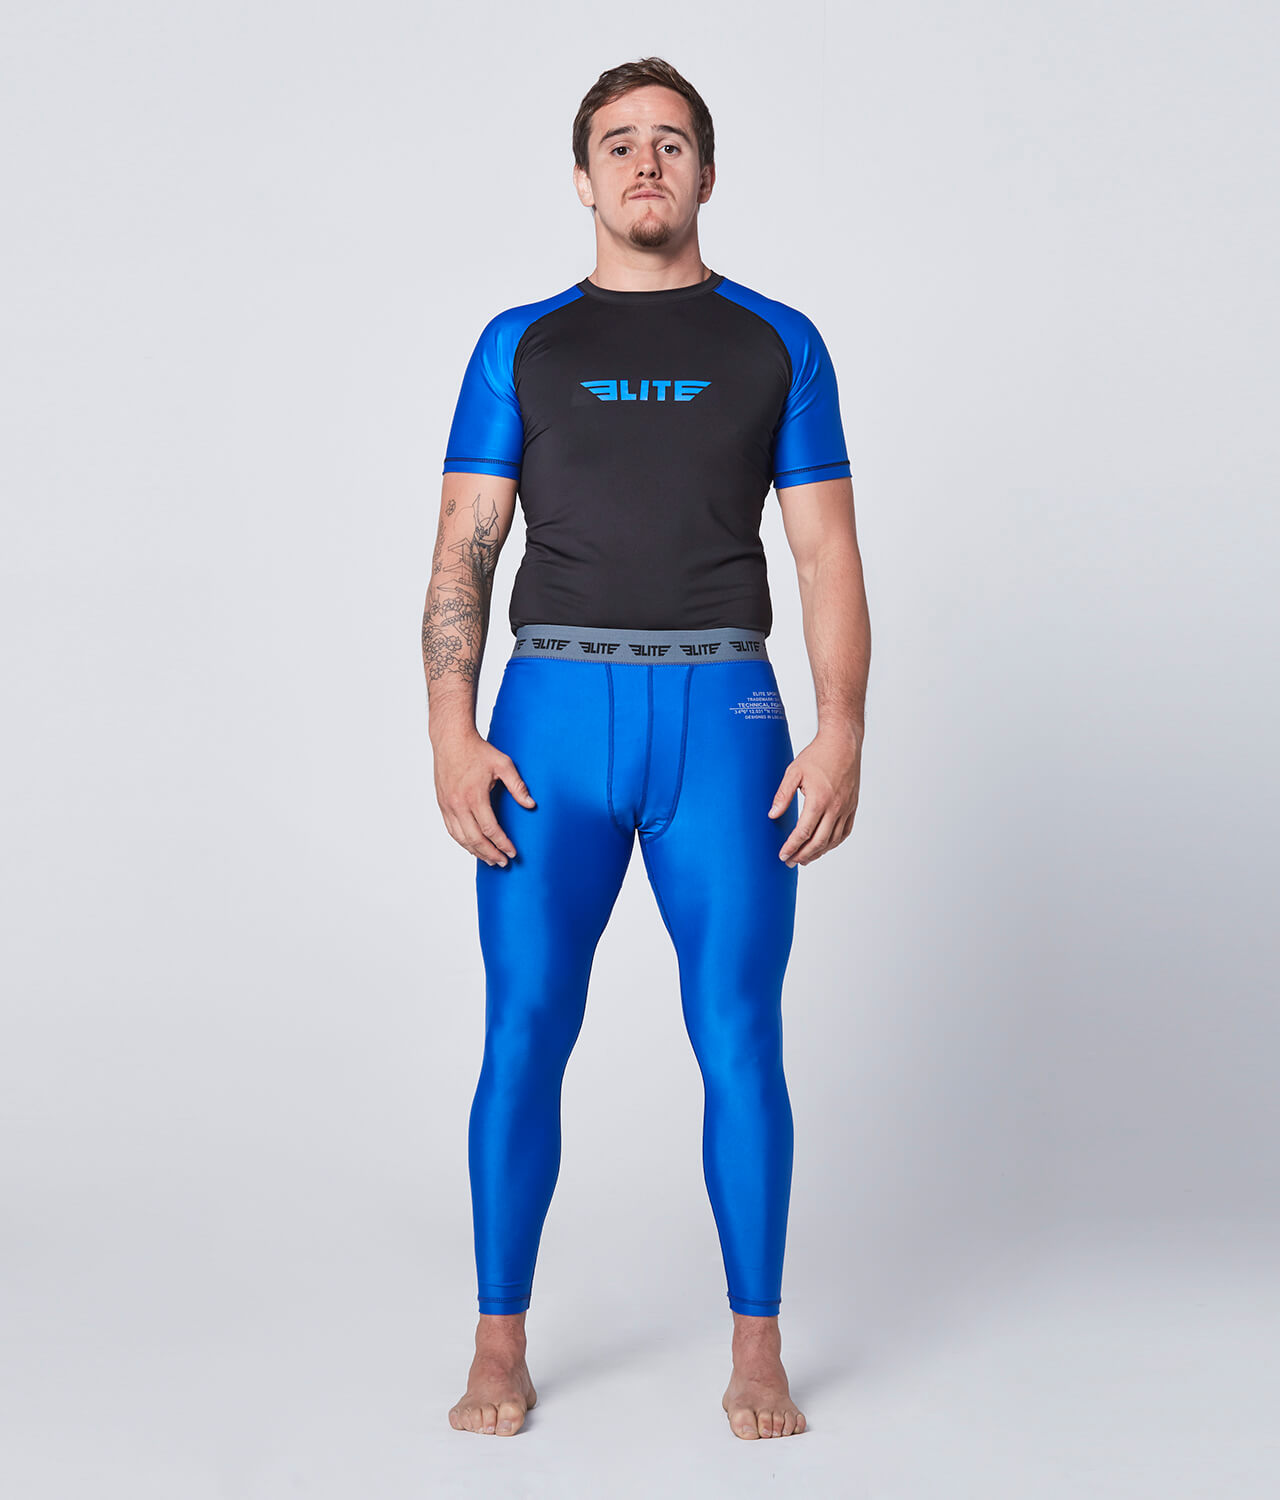 Men's Plain Blue Compression Muay Thai Spat Pants